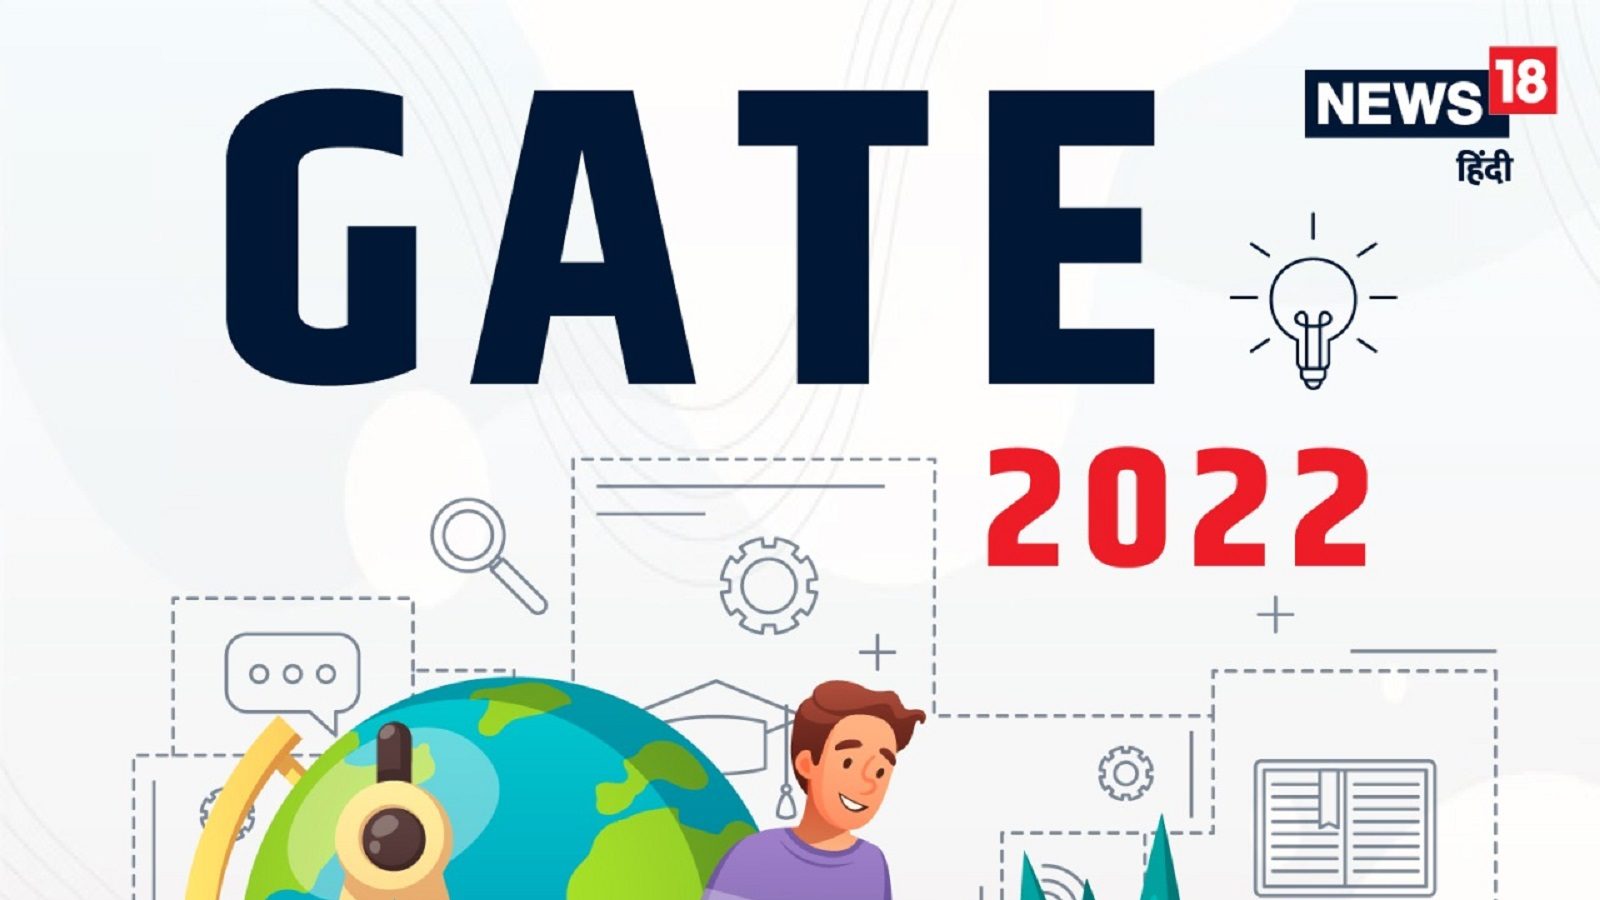 GATE 2022 Registration: ਅੱਜ ਹੋ ਰਹੀ ਹੈ ਸਮਾਪਤ, ਜਾਣੋ ਪ੍ਰੀਖਿਆ ਦੀ ਤਰੀਕ ਤੇ ਹੋਰ ਜਾਣਕਾਰੀ